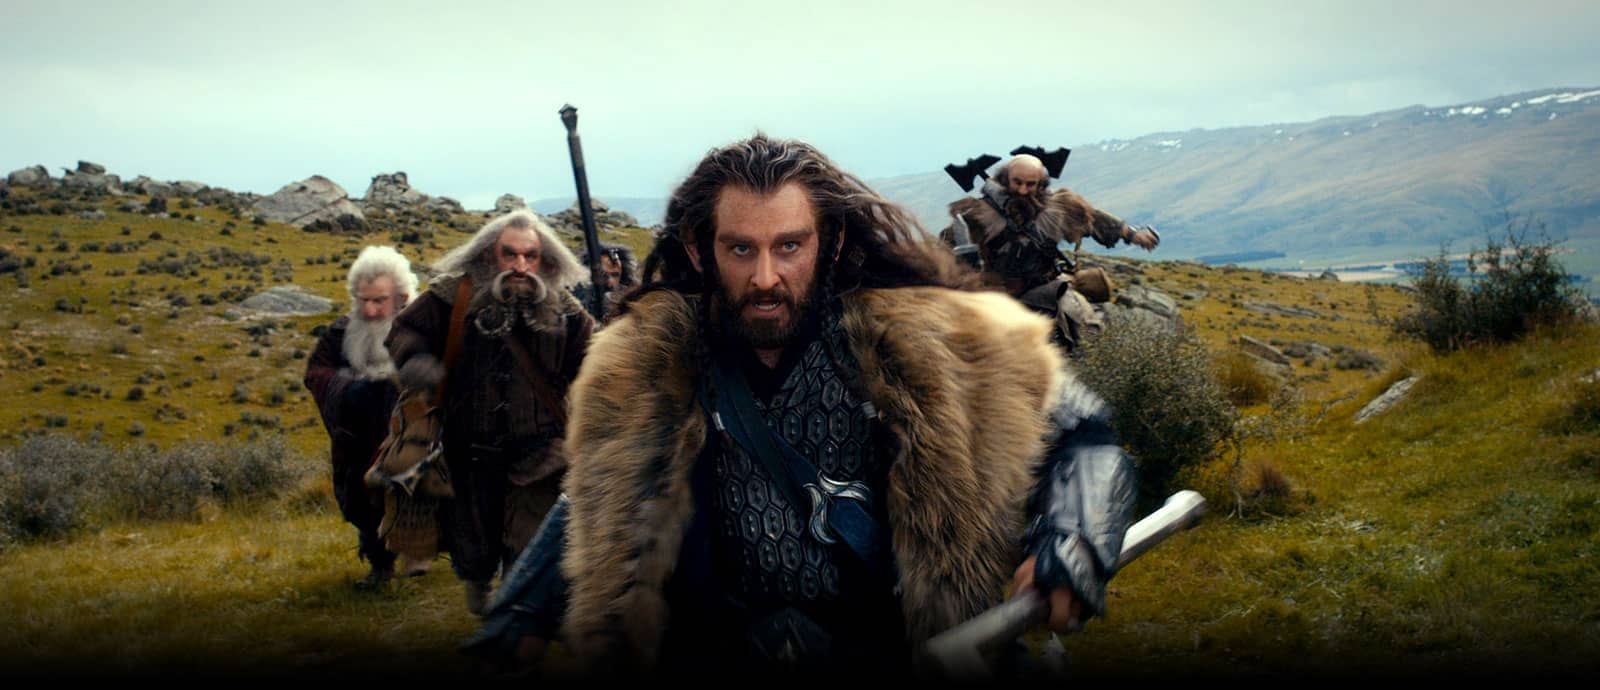 Abb. 1: Screenshot aus Der Hobbit – Eine unerwartete Reise (2012). Verleih: Warner Bros.